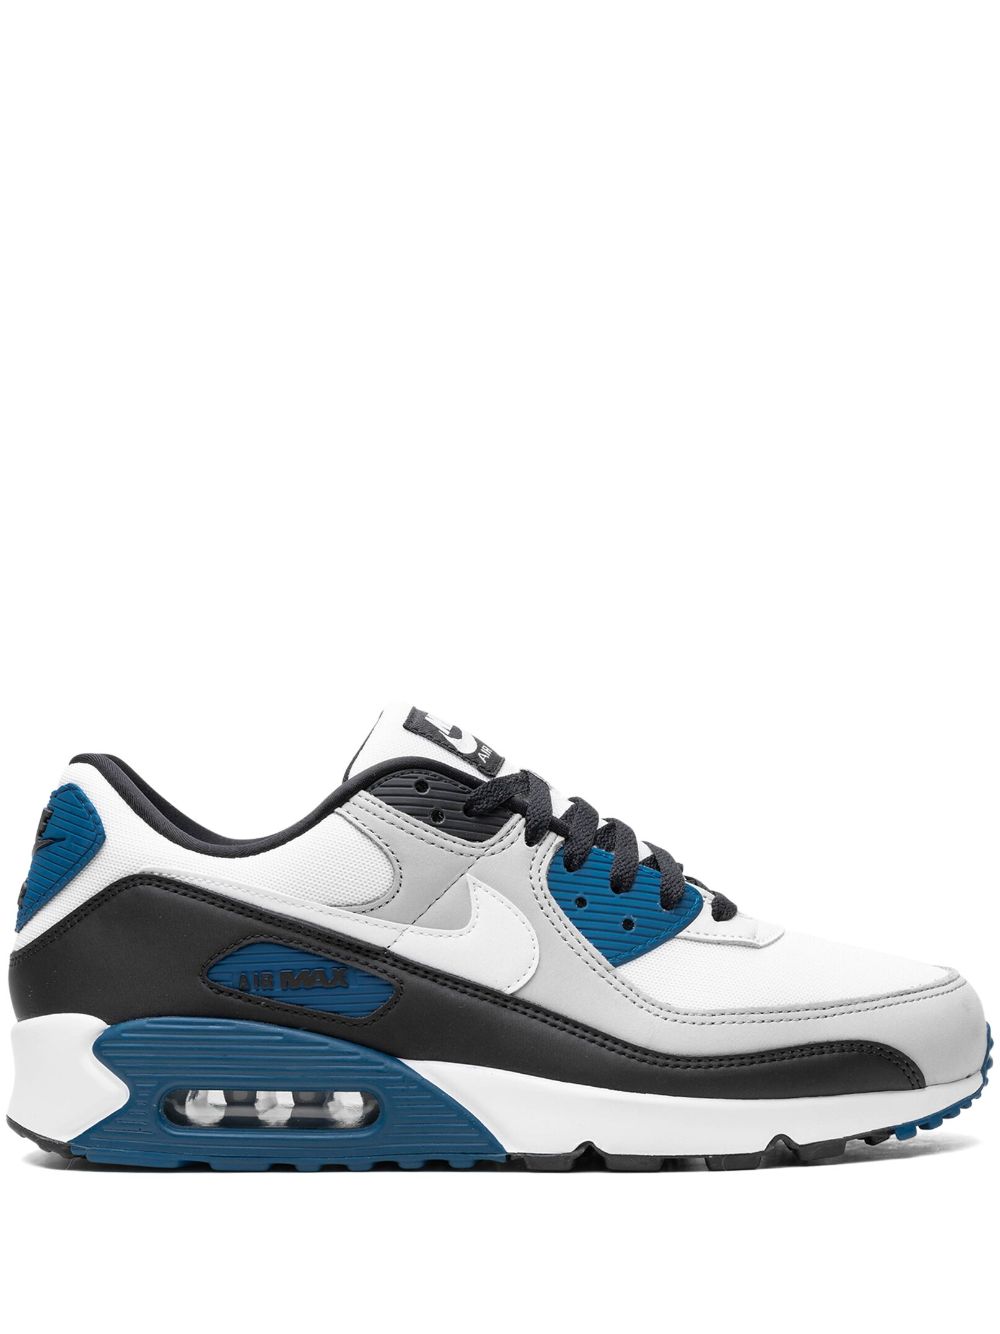 Nike Air Max 90 "black/teal Blue" Sneakers